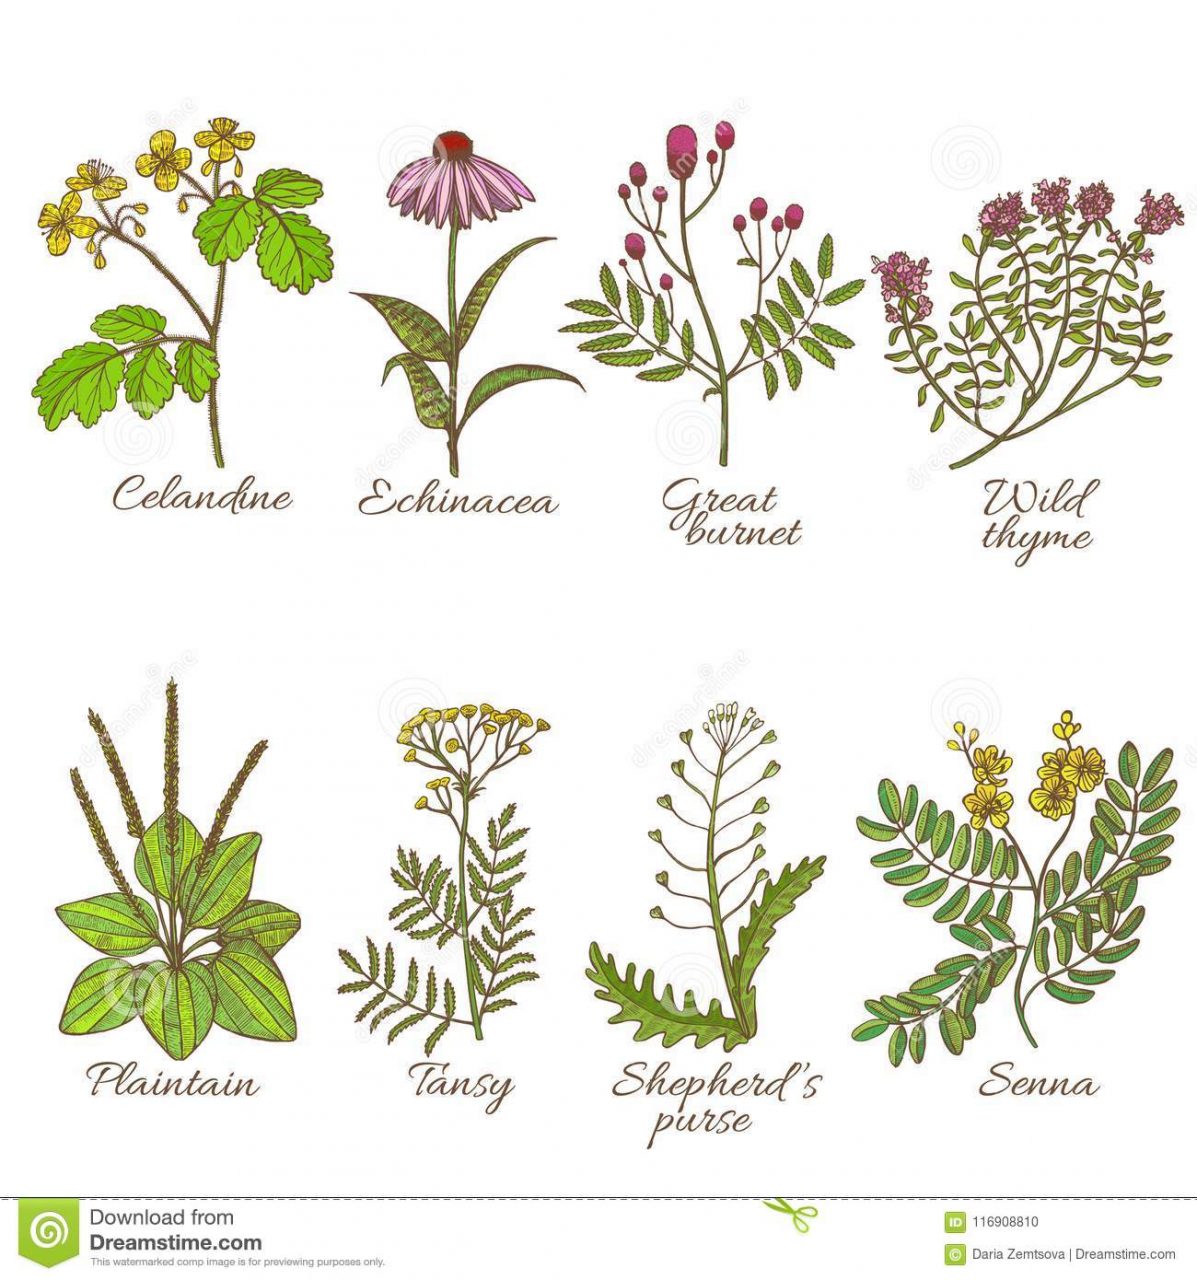 Total Imagen Plantas Medicinales Para Colorear Con Sus Nombres En The